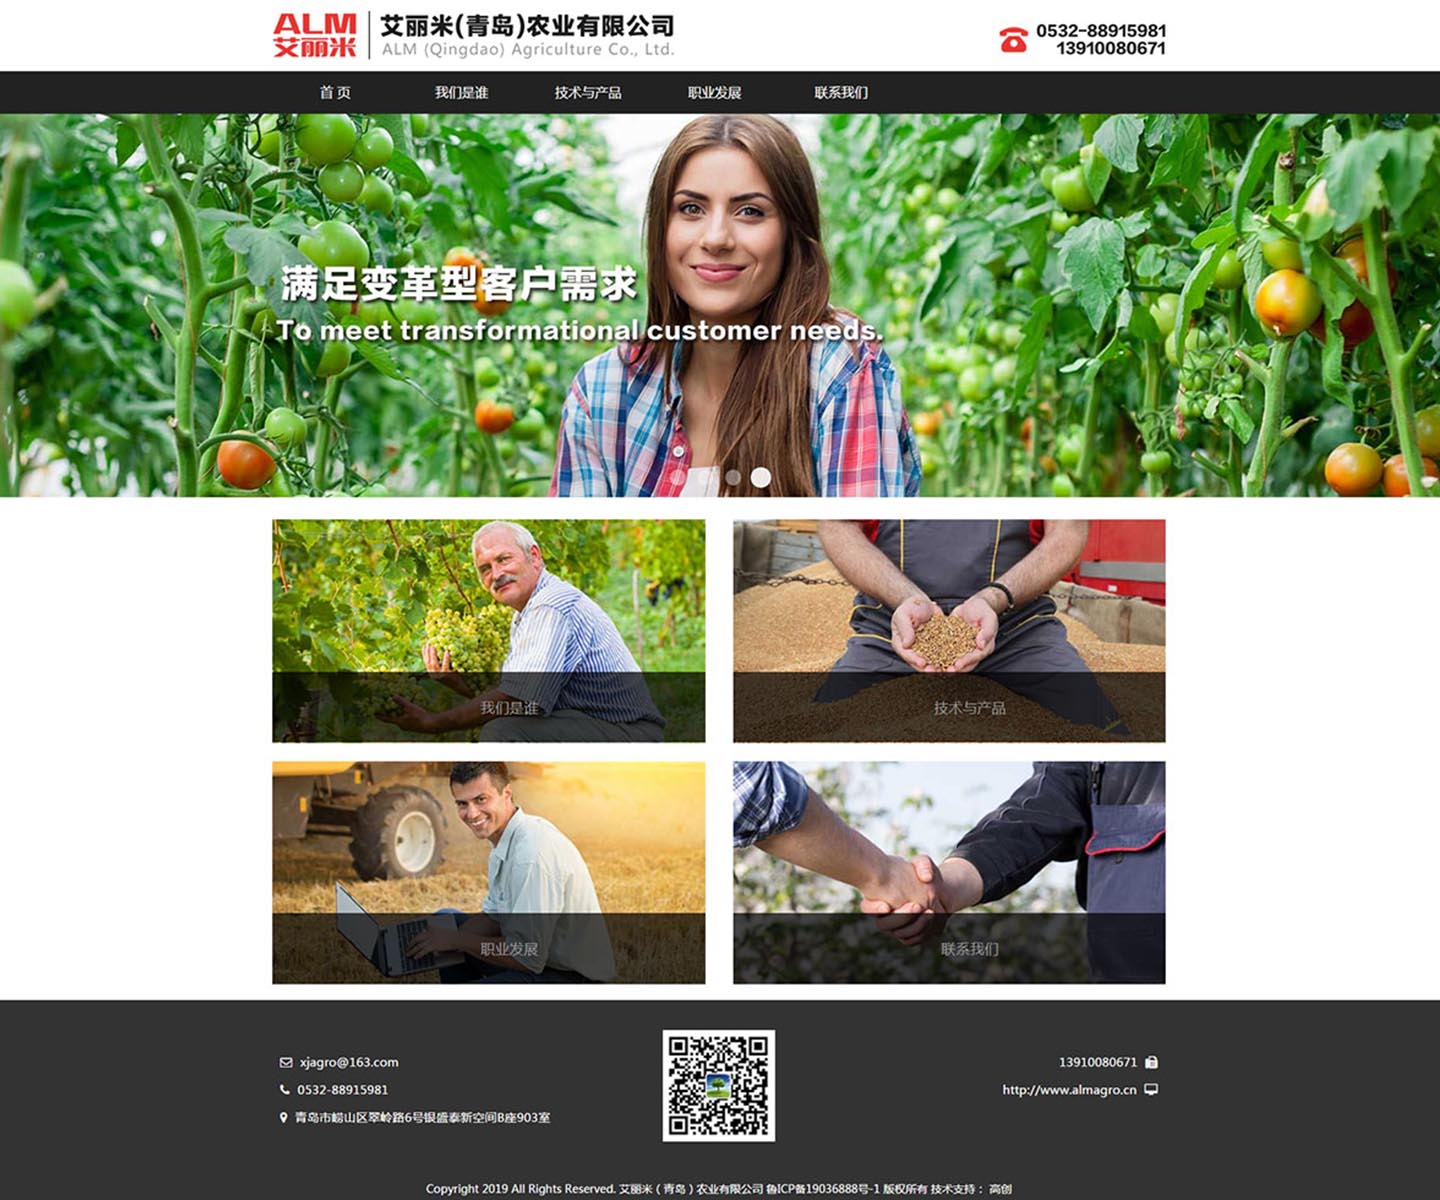 艾丽米农业有限公司-中文版官方网站